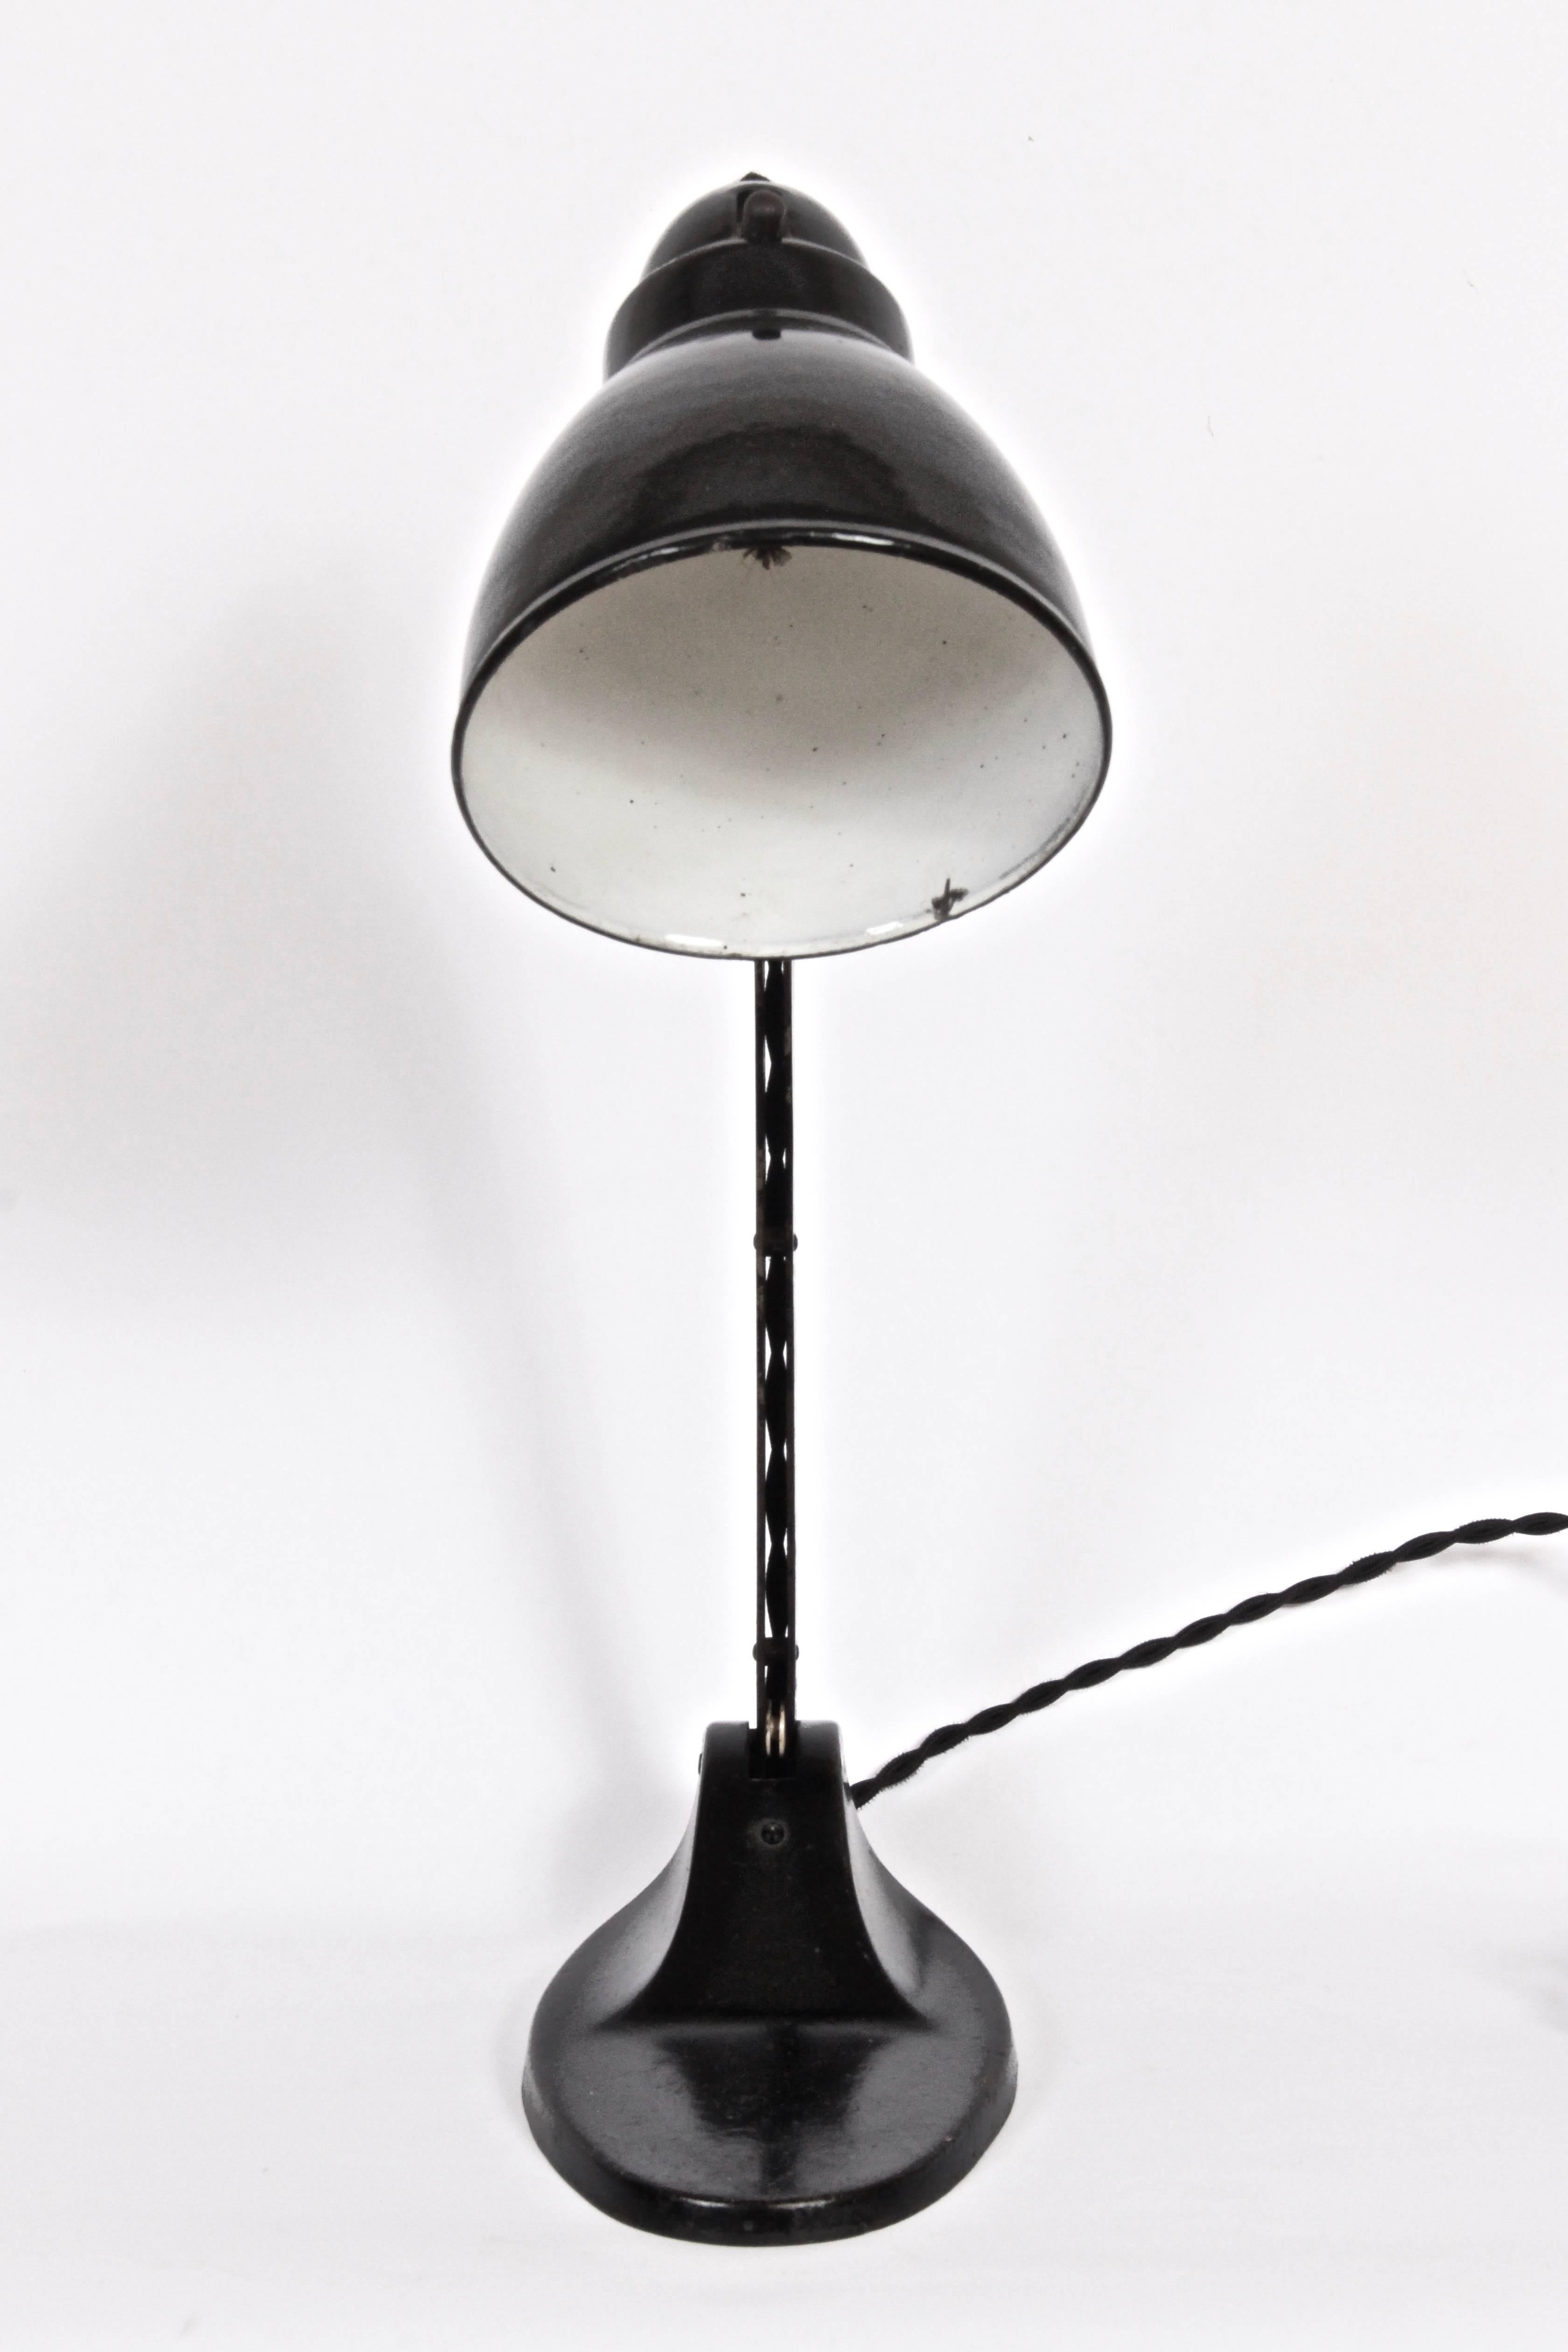 Bauhaus J.J. Pieter Oud Style Black Architects Desk Lamp by Viktoria Lampe, c. 1930 For Sale